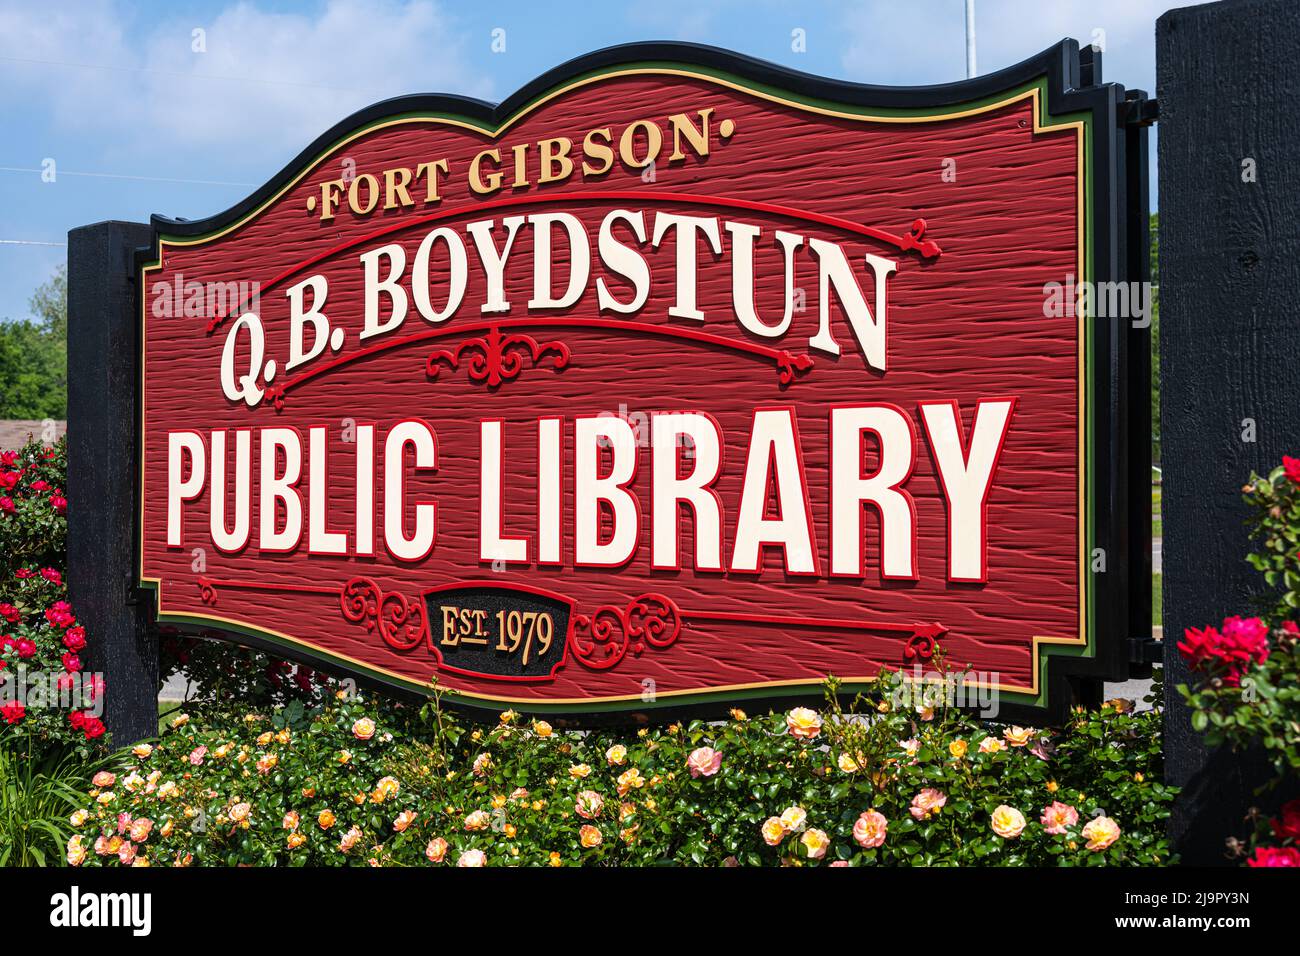 Segnaletica d'ingresso per Fort Gibson, Oklahoma, Q.B. Boydstun Public Library, una biblioteca locale all'interno dell'Eastern Oklahoma Library System. (USA) Foto Stock